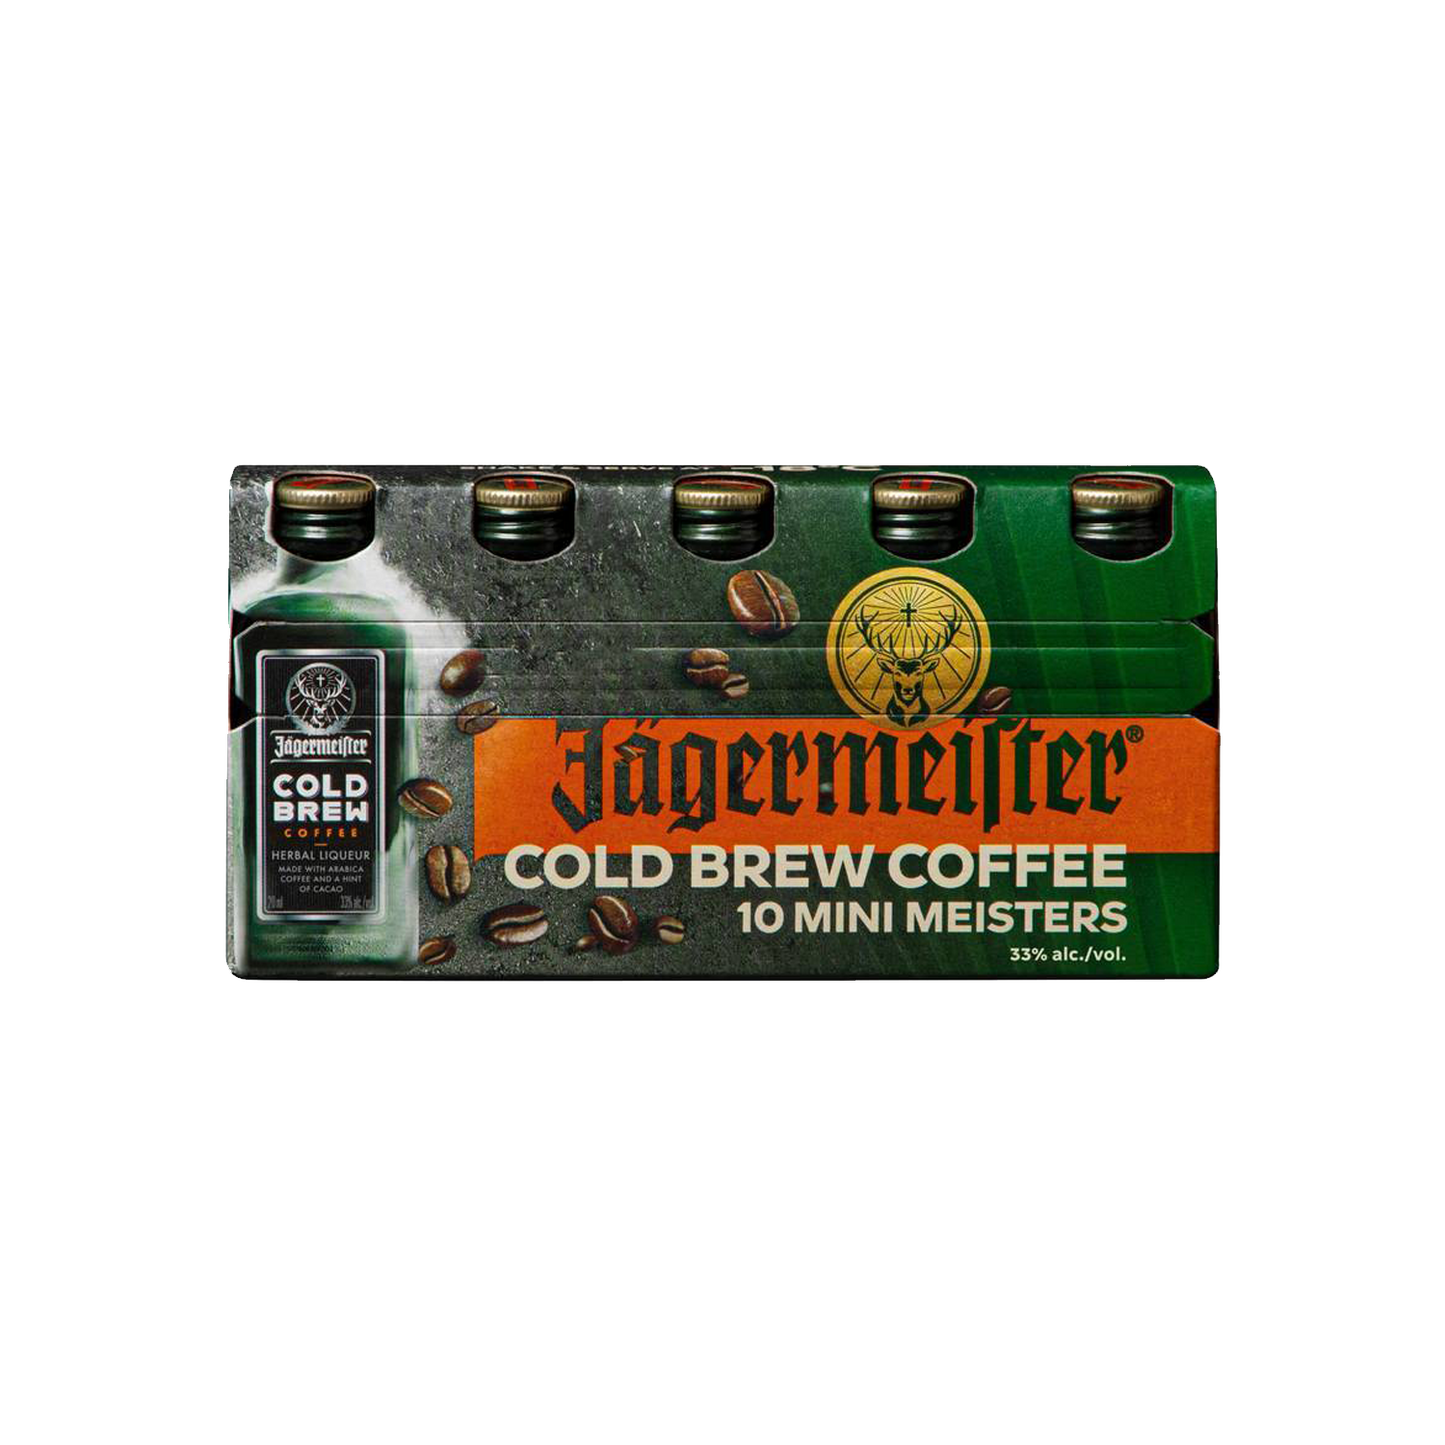 Jägermeister Cold Brew Coffee - Mini Meister (Single Sleeve)